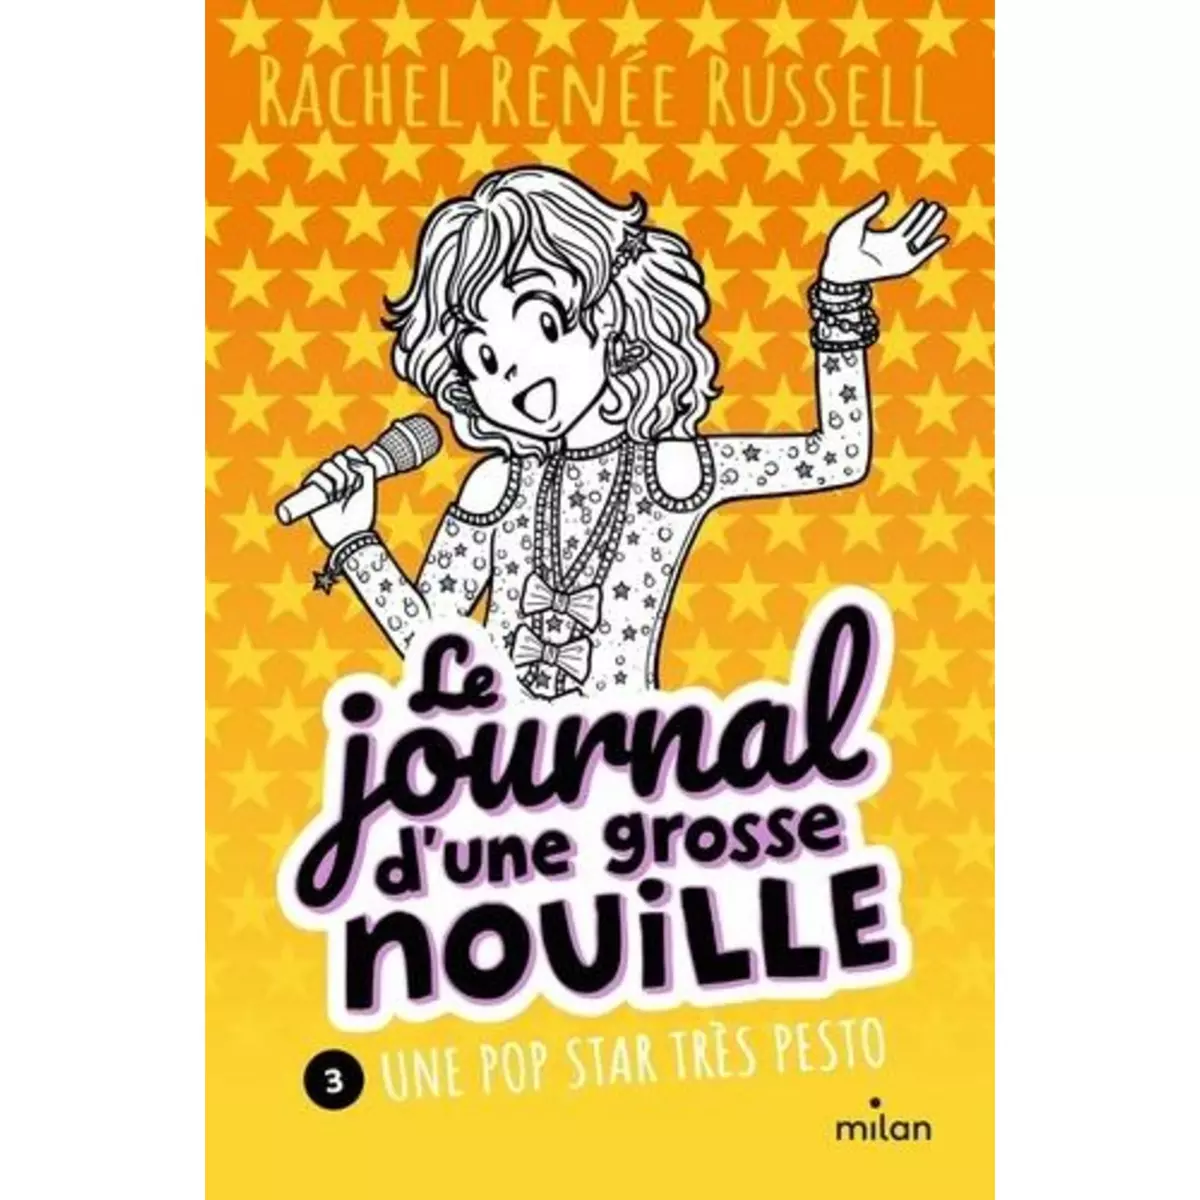  LE JOURNAL D'UNE GROSSE NOUILLE TOME 3 : UNE POP STAR TRES PESTO, Russell Rachel Renée